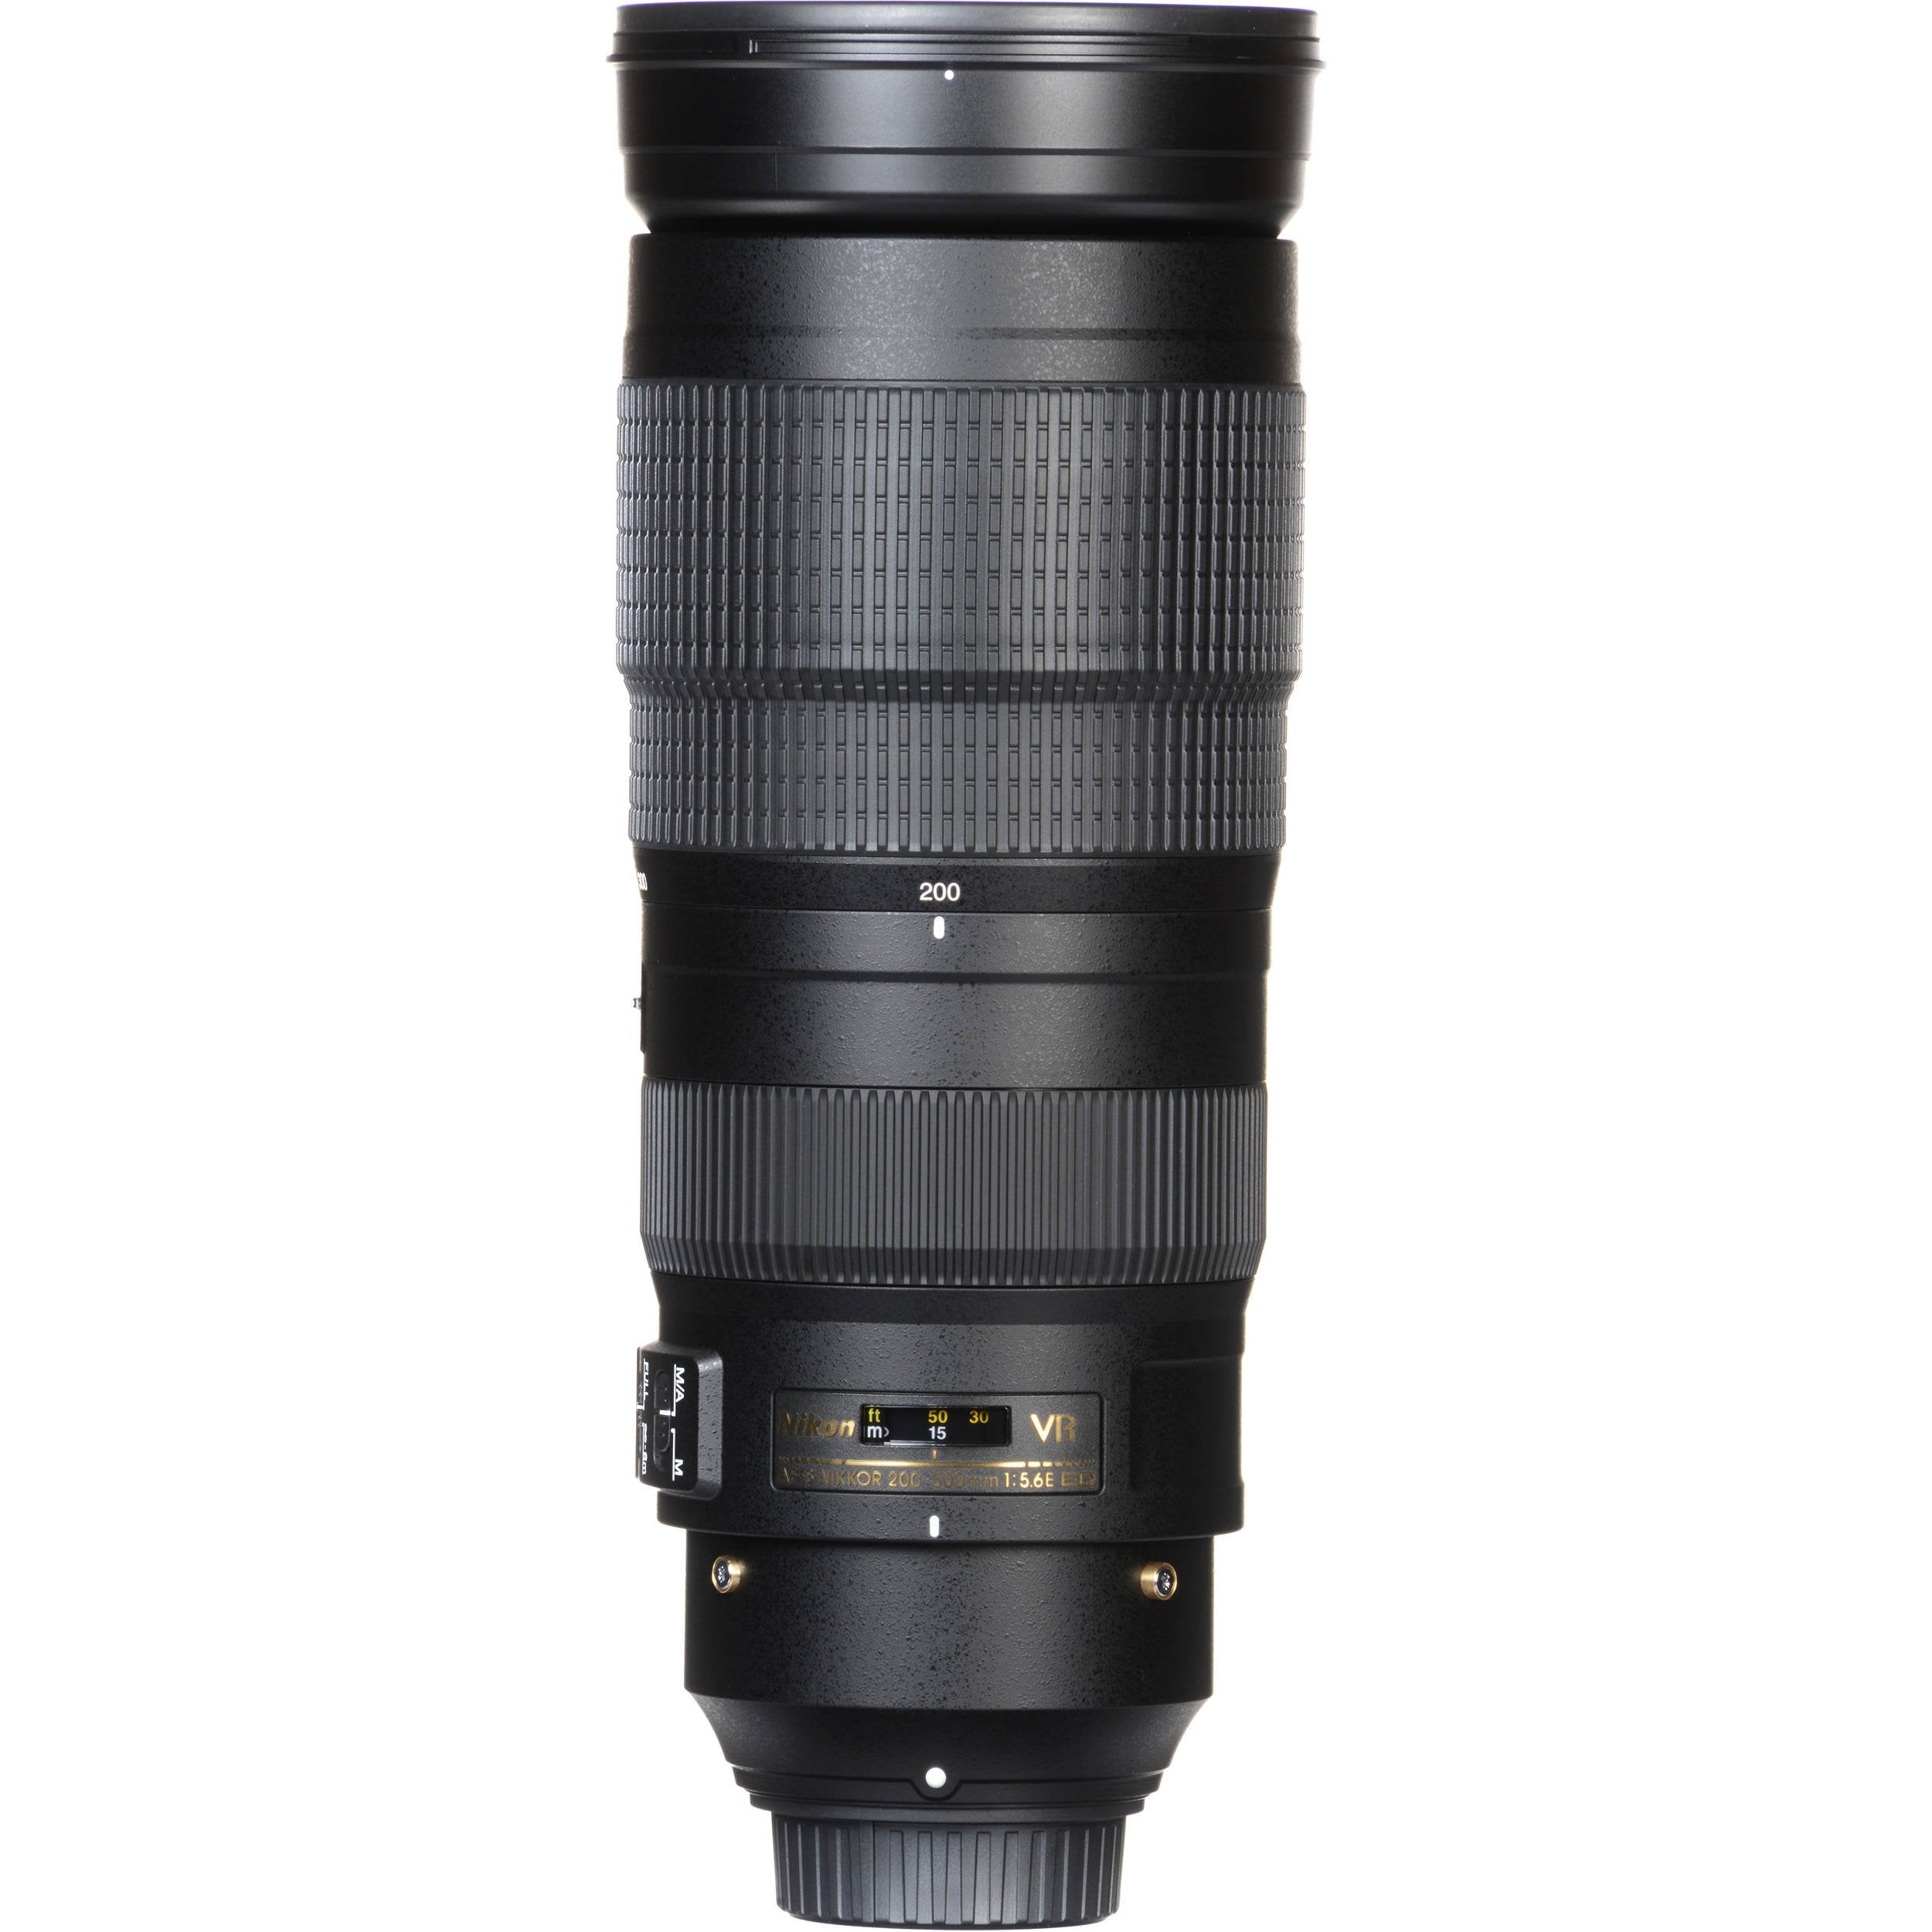 Nikon AF-S NIKKOR 200-500mm f/5.6E ED VR Camera Lens (Intl Model) - Bundle